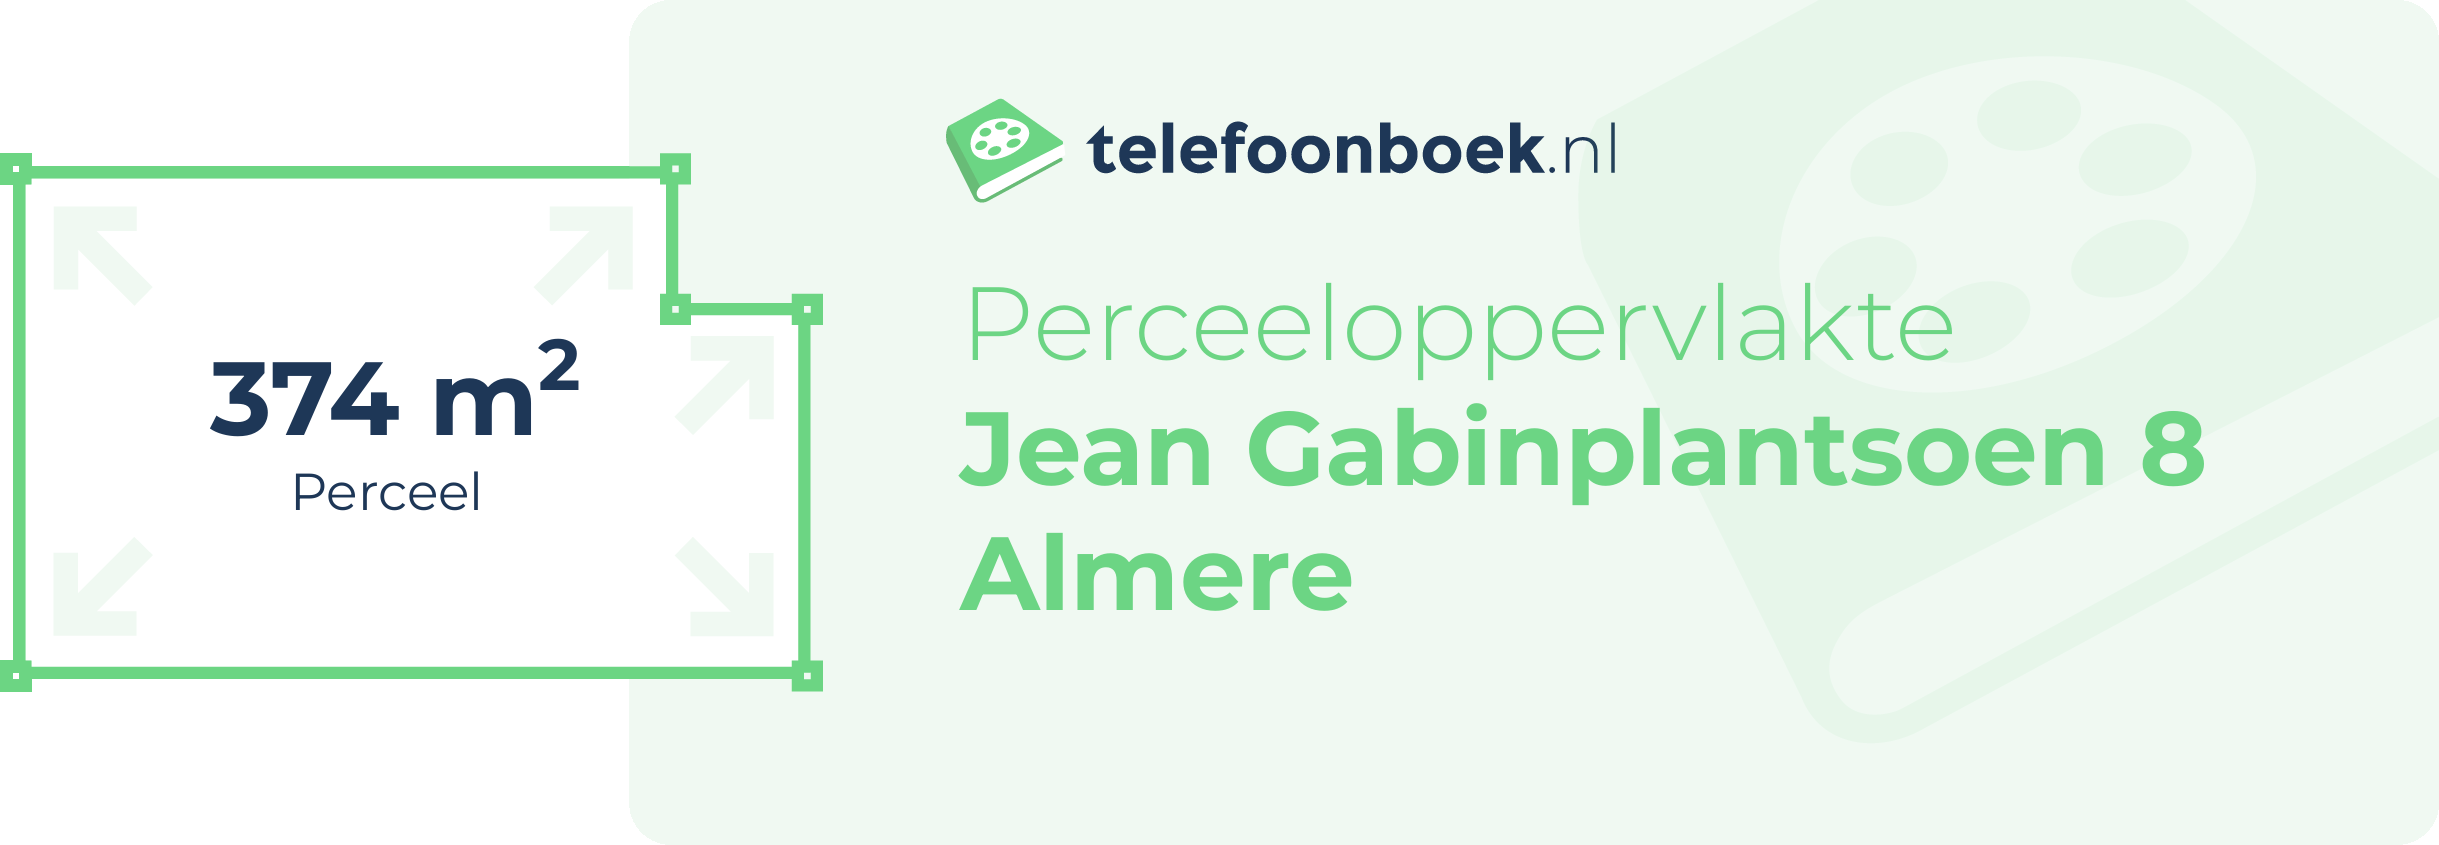 Perceeloppervlakte Jean Gabinplantsoen 8 Almere